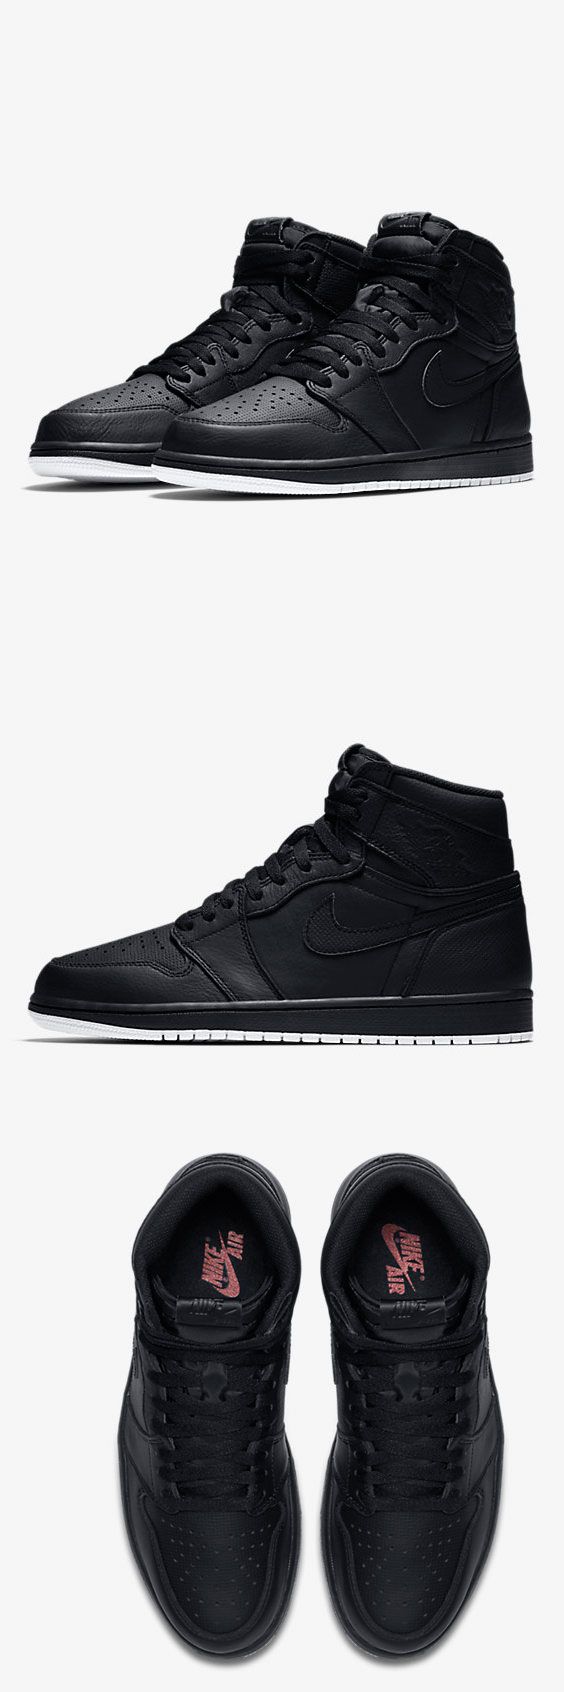 Nike Air Jordan 1 Retro High OG Men's Shoe $120–165...